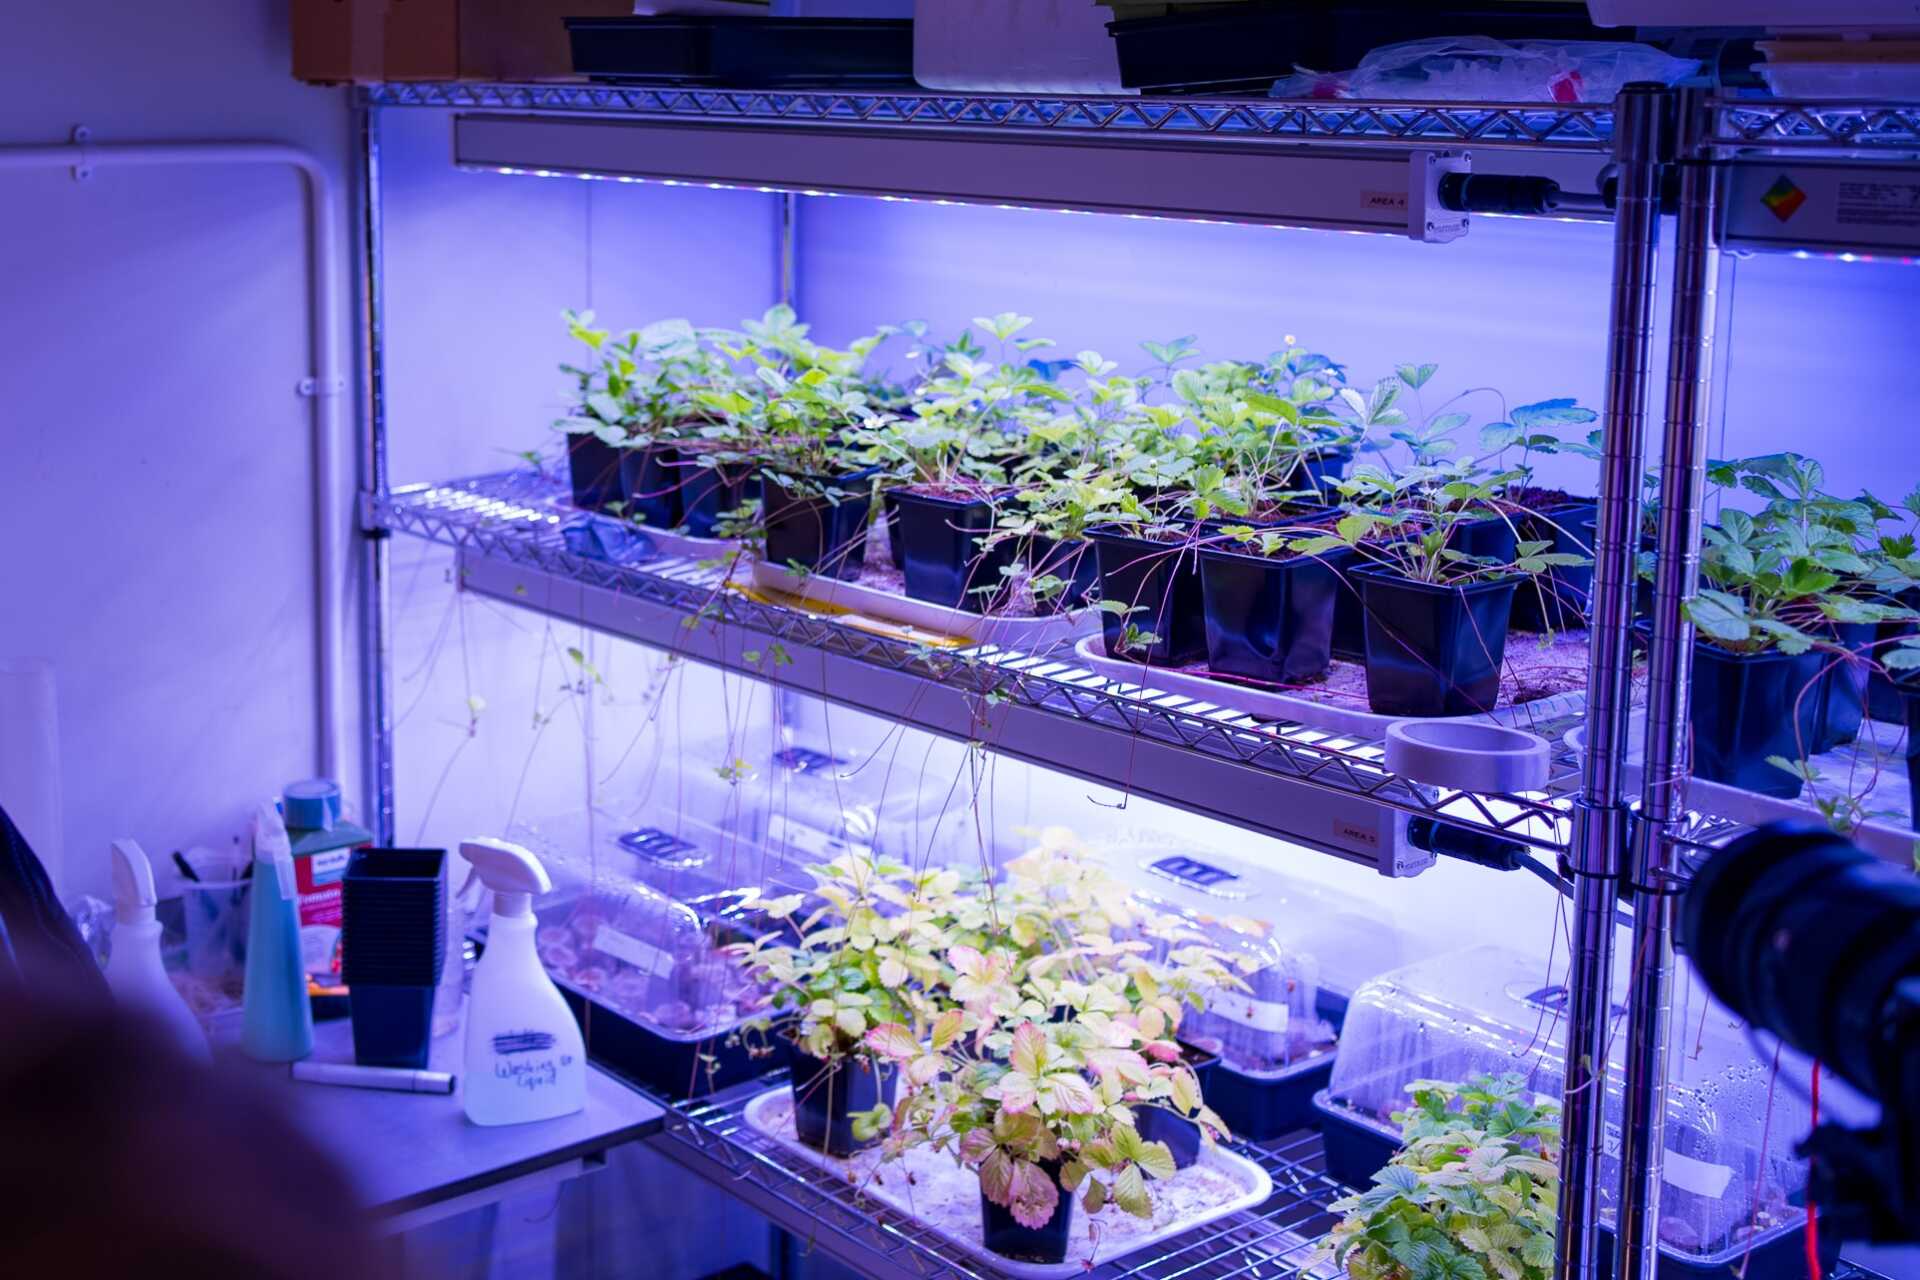 Hops growing on a lab shelf under ultraviolet light